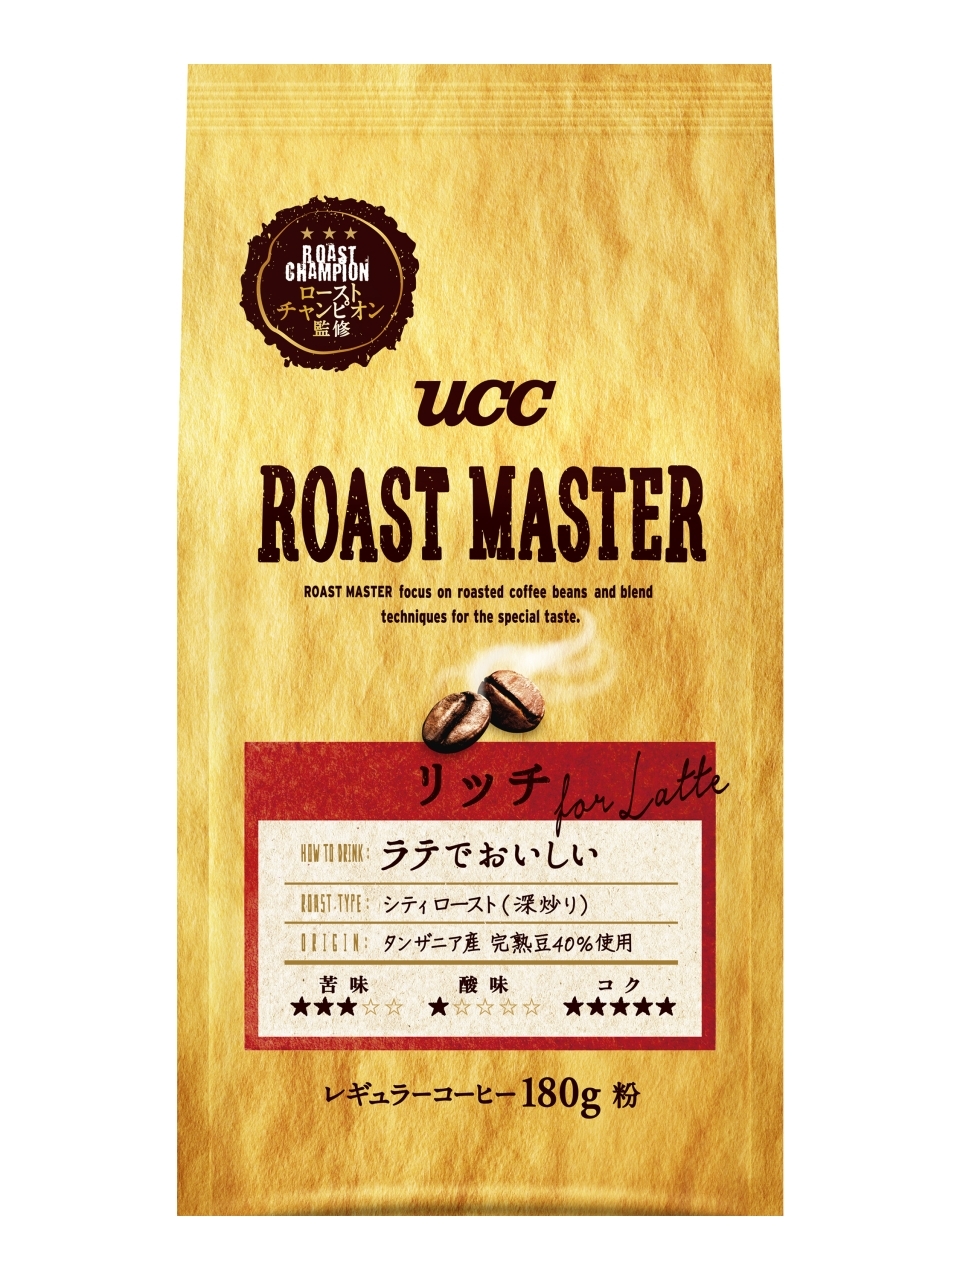 Uccローストチャンピオン Roast Master が提案する焙煎技術を駆使して作りあげたコーヒー Ucc Roast Master ブランド9月7日 月 より全国でリニューアル発売 ｕｃｃ上島珈琲株式会社のプレスリリース